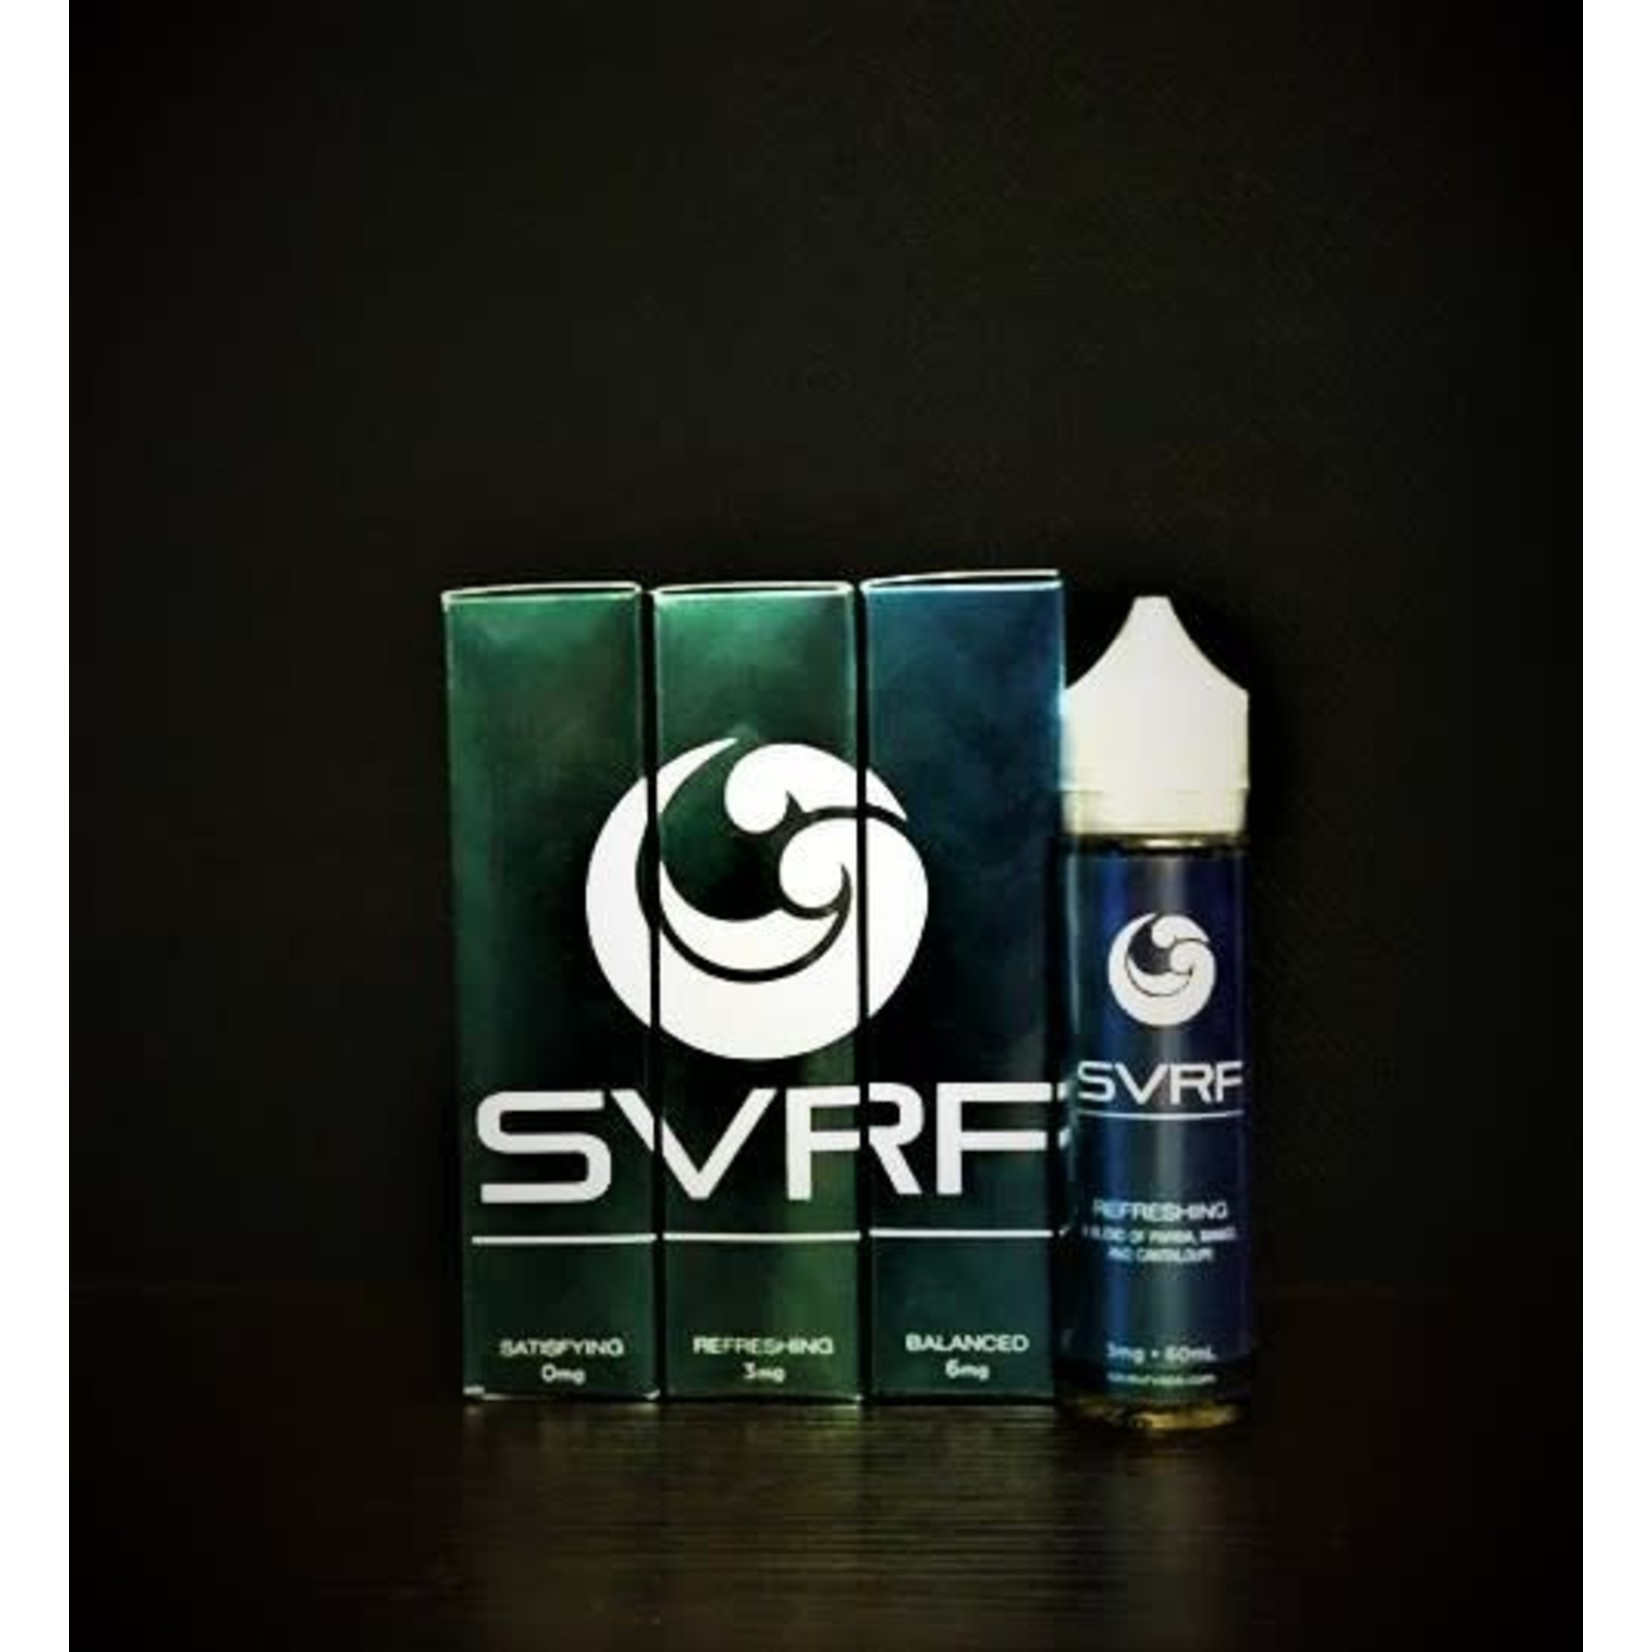 SVRF Refreshing 60ml